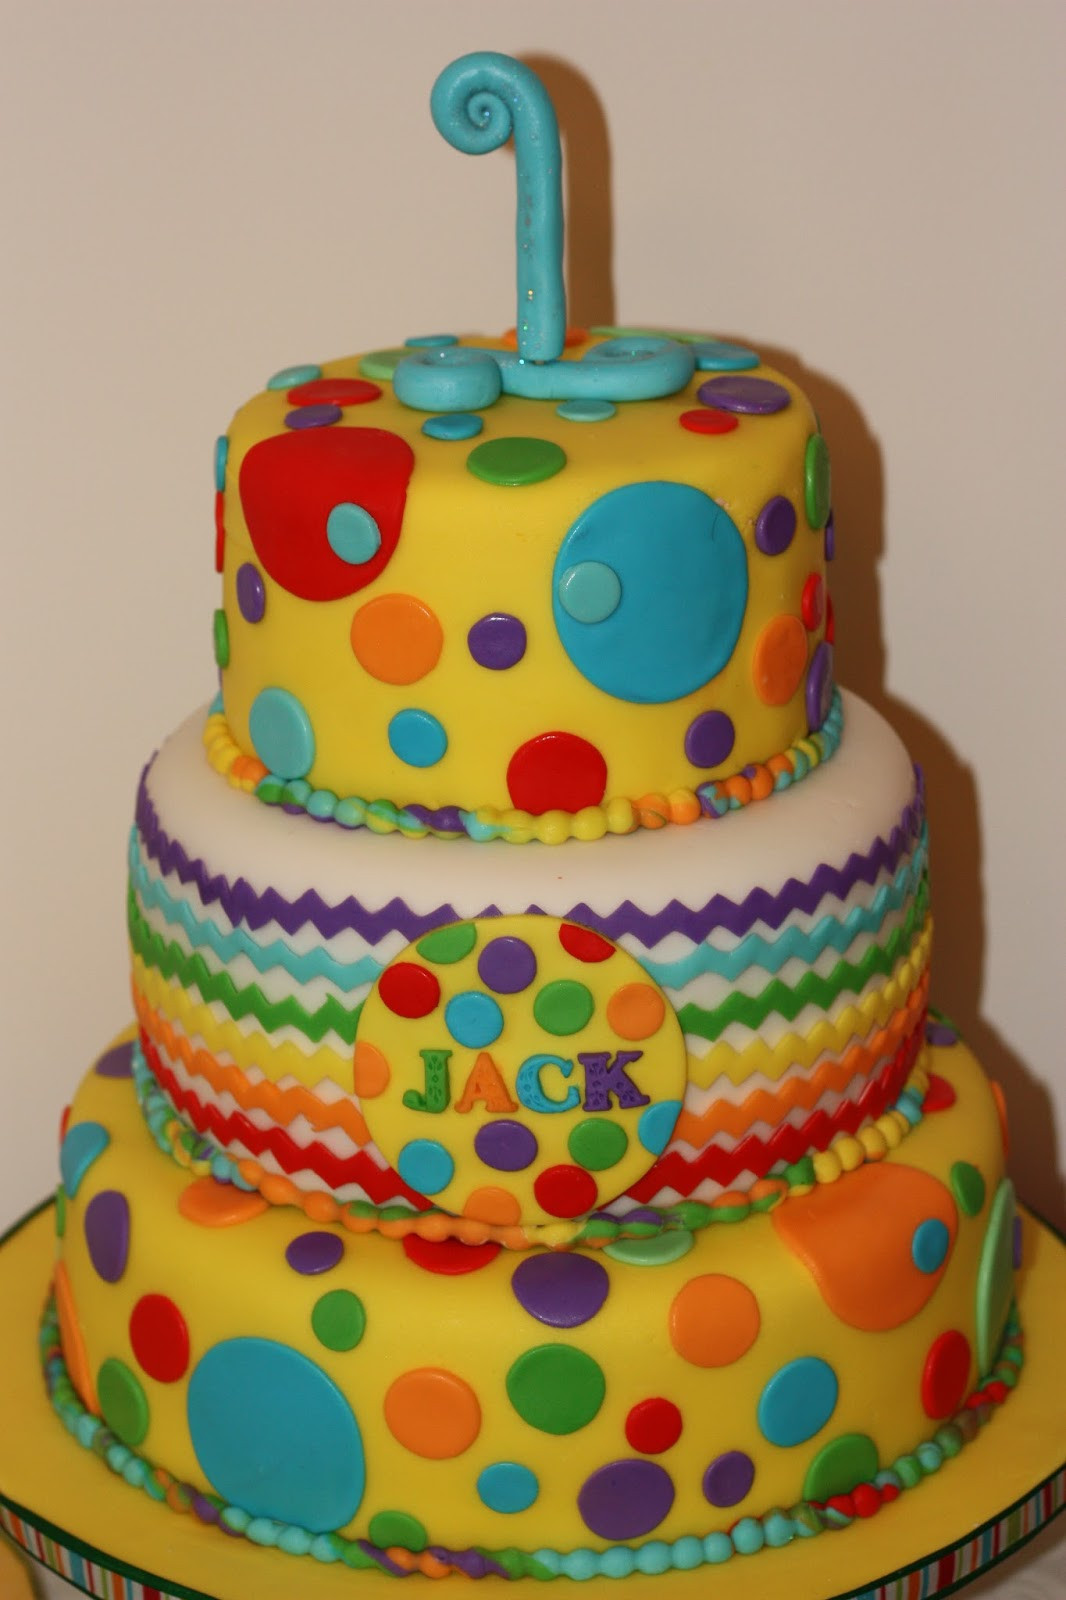 Polka Dot Birthday Cake
 Sweet Celebrations Jack s first birthday polka dot